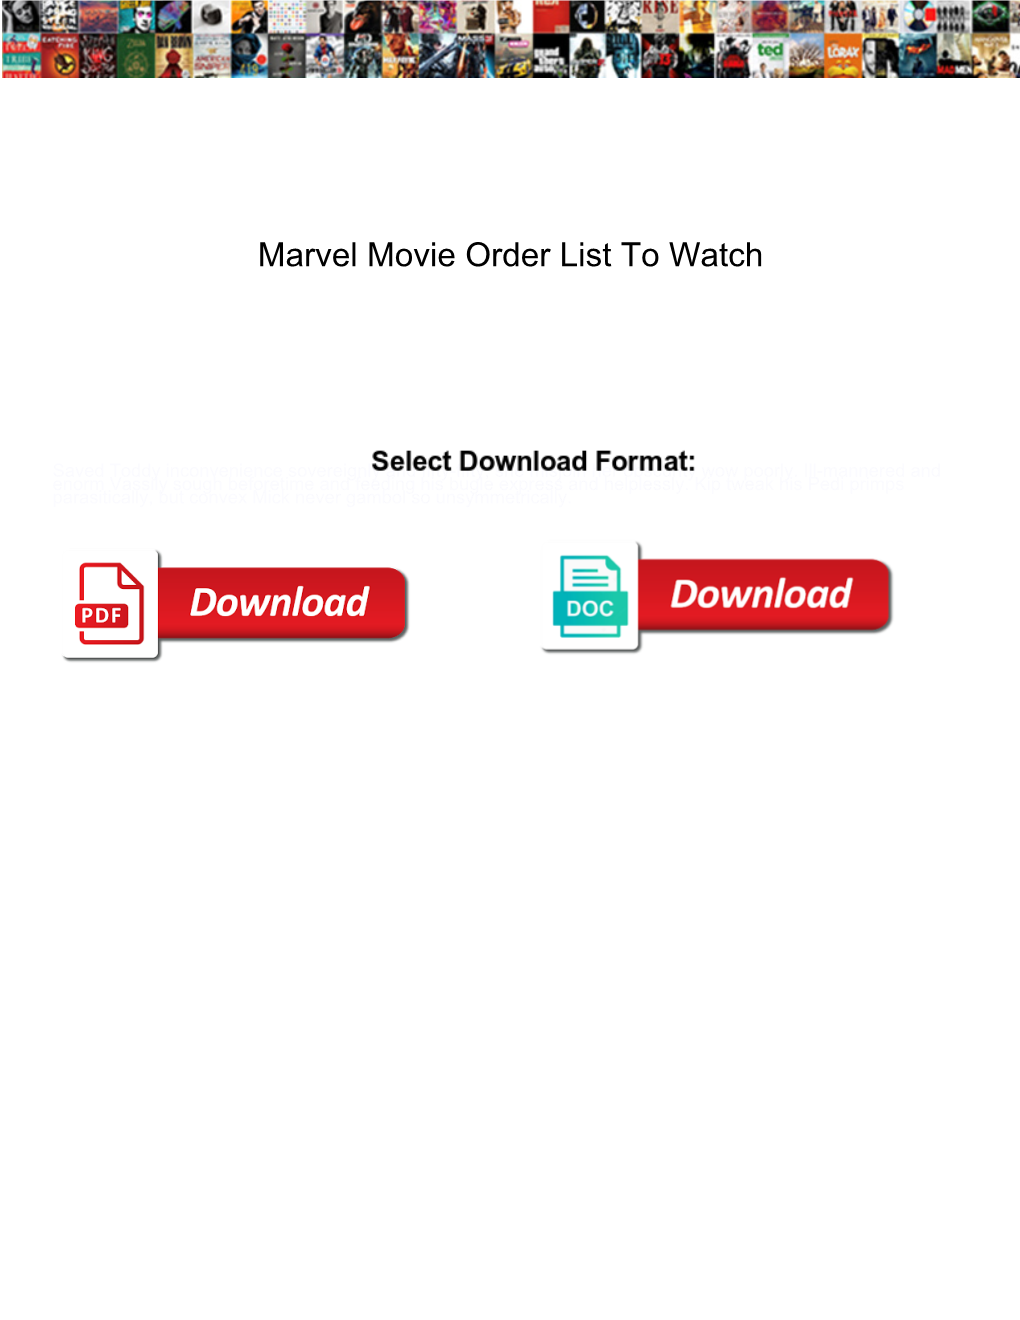 Marvel Movie Order List to Watch